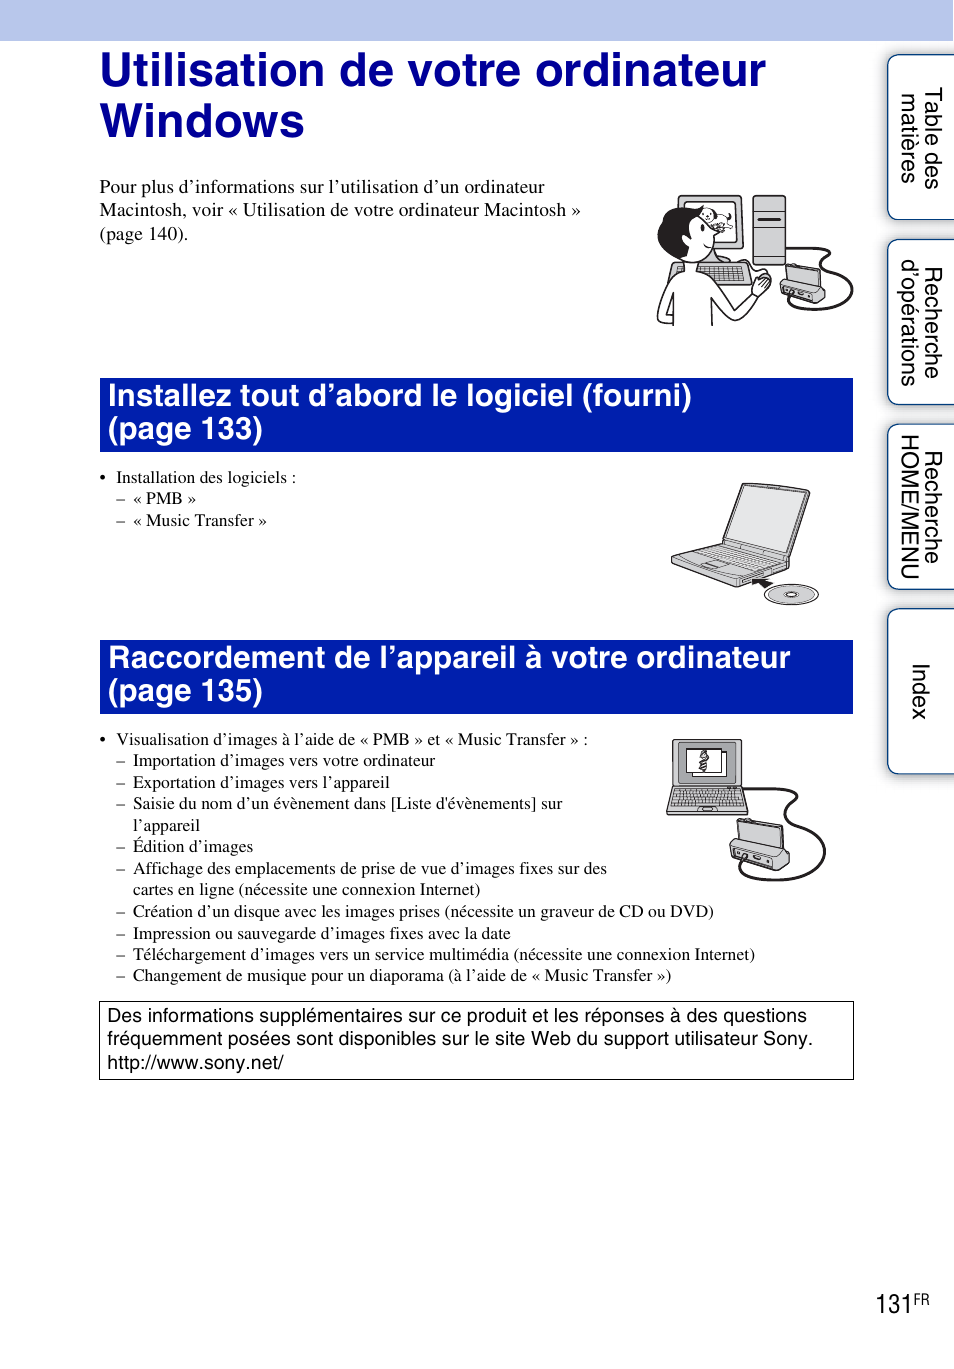 Utilisation de votre ordinateur windows | Sony DSC-T900 Manuel d'utilisation | Page 131 / 171